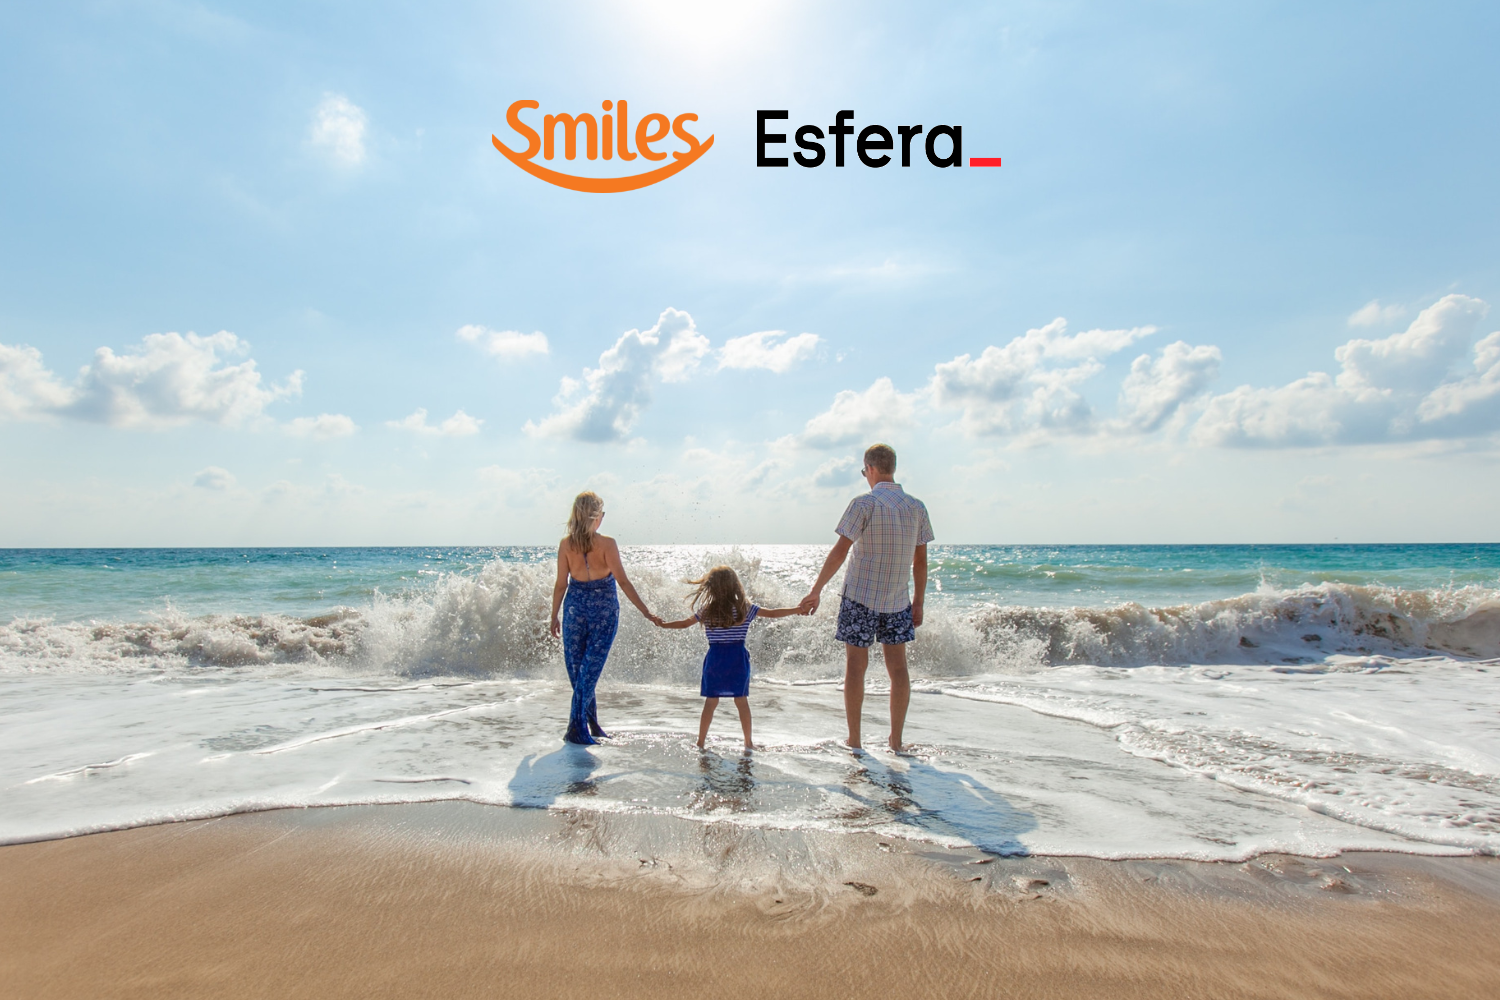 Família em frente a uma praia com logo Smiles e Esfera